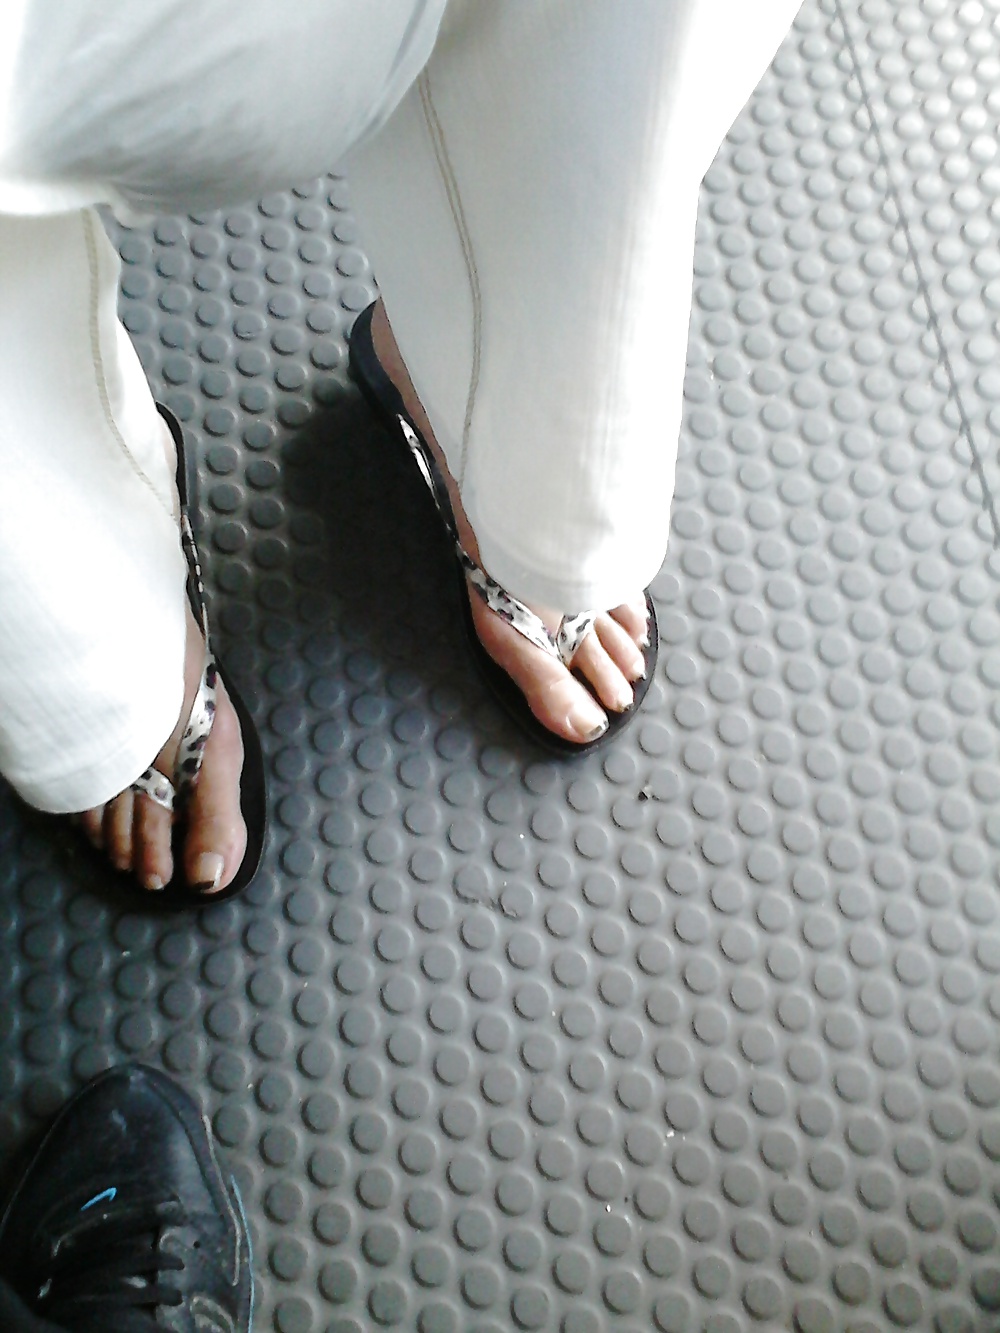 Feet in bus #22497965